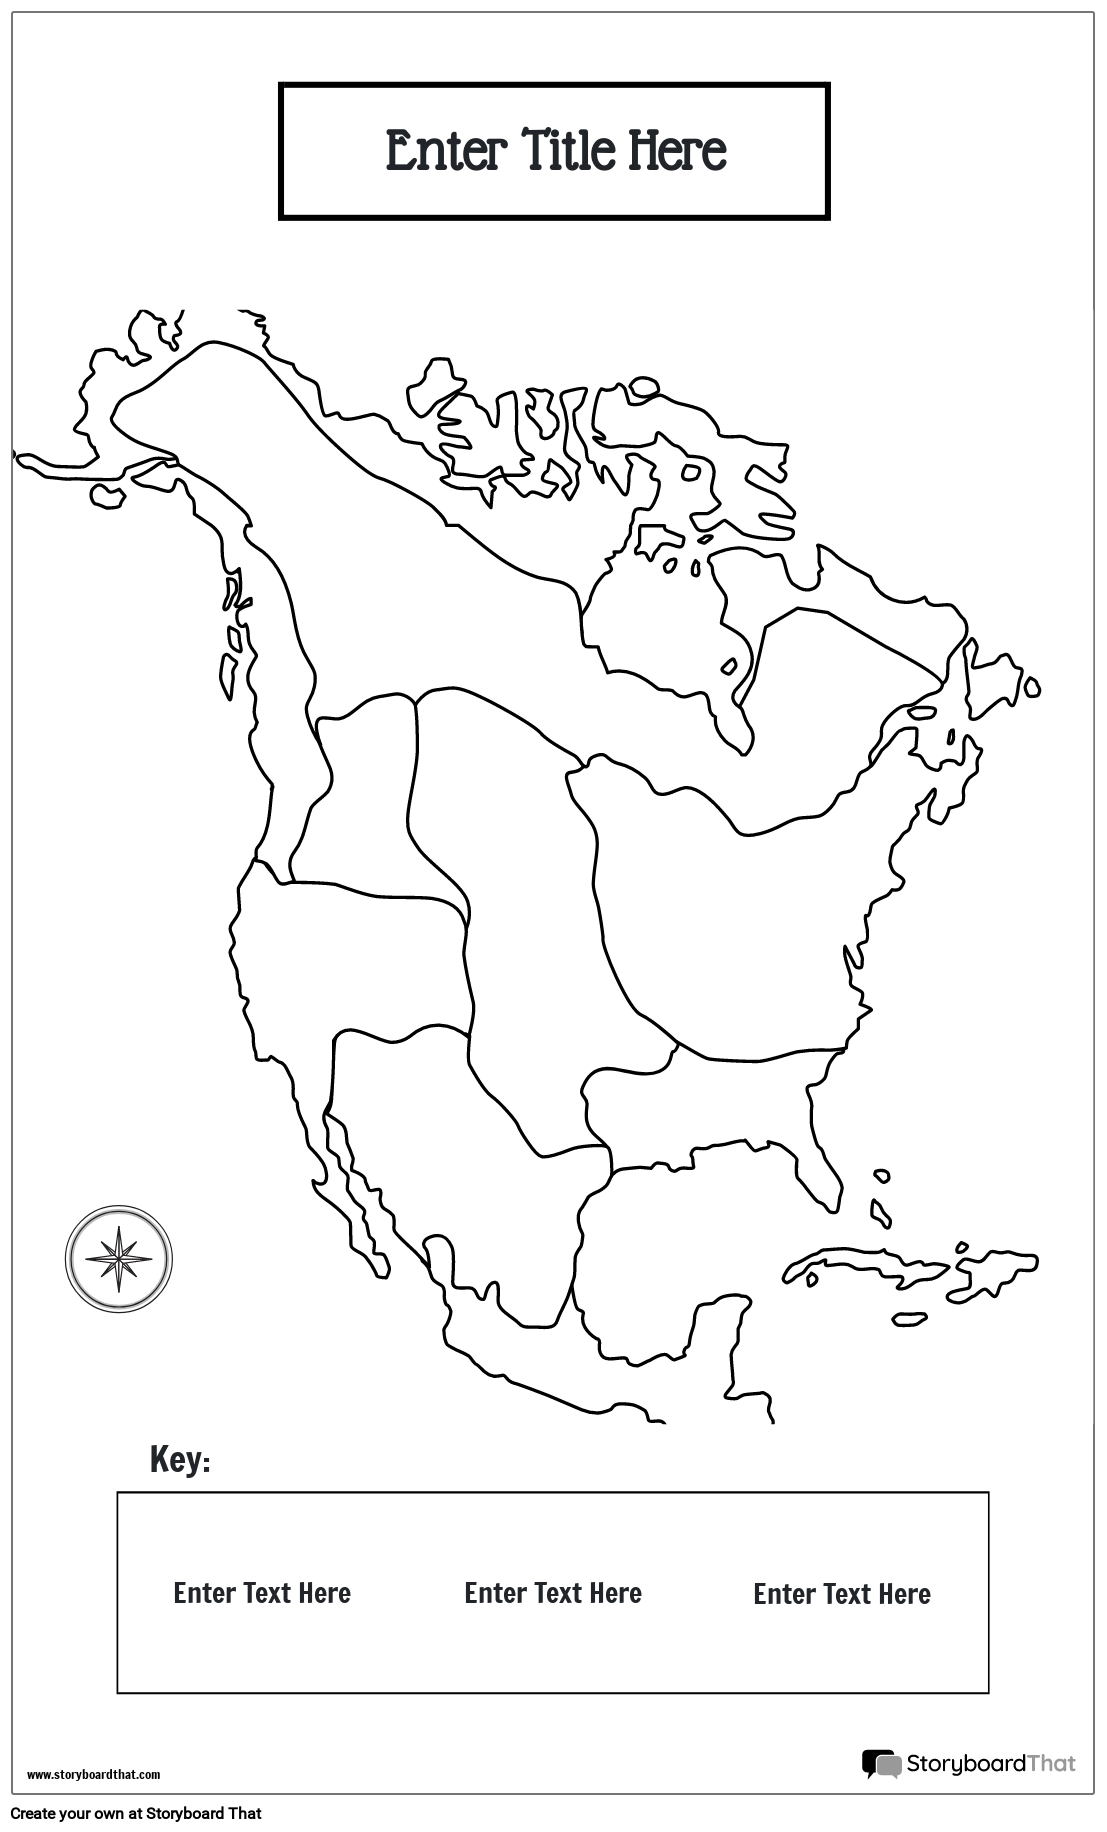 ملصق الخريطة 16 منطقة ثقافية أمريكية أصيلة